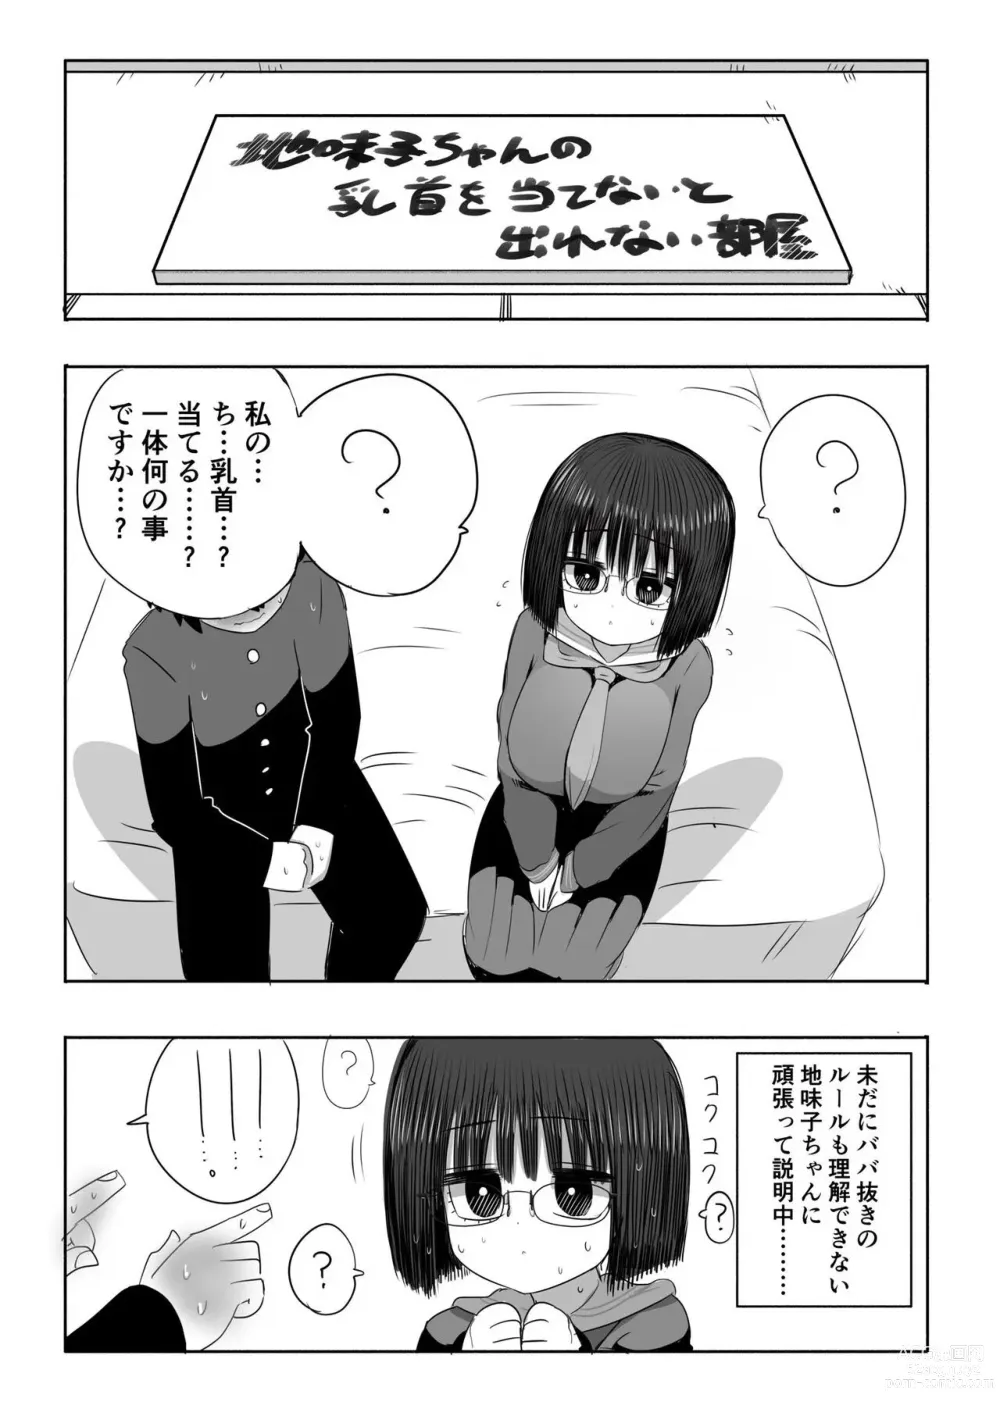 Page 2 of doujinshi Jimiko-chan no Chikubi Ate Game